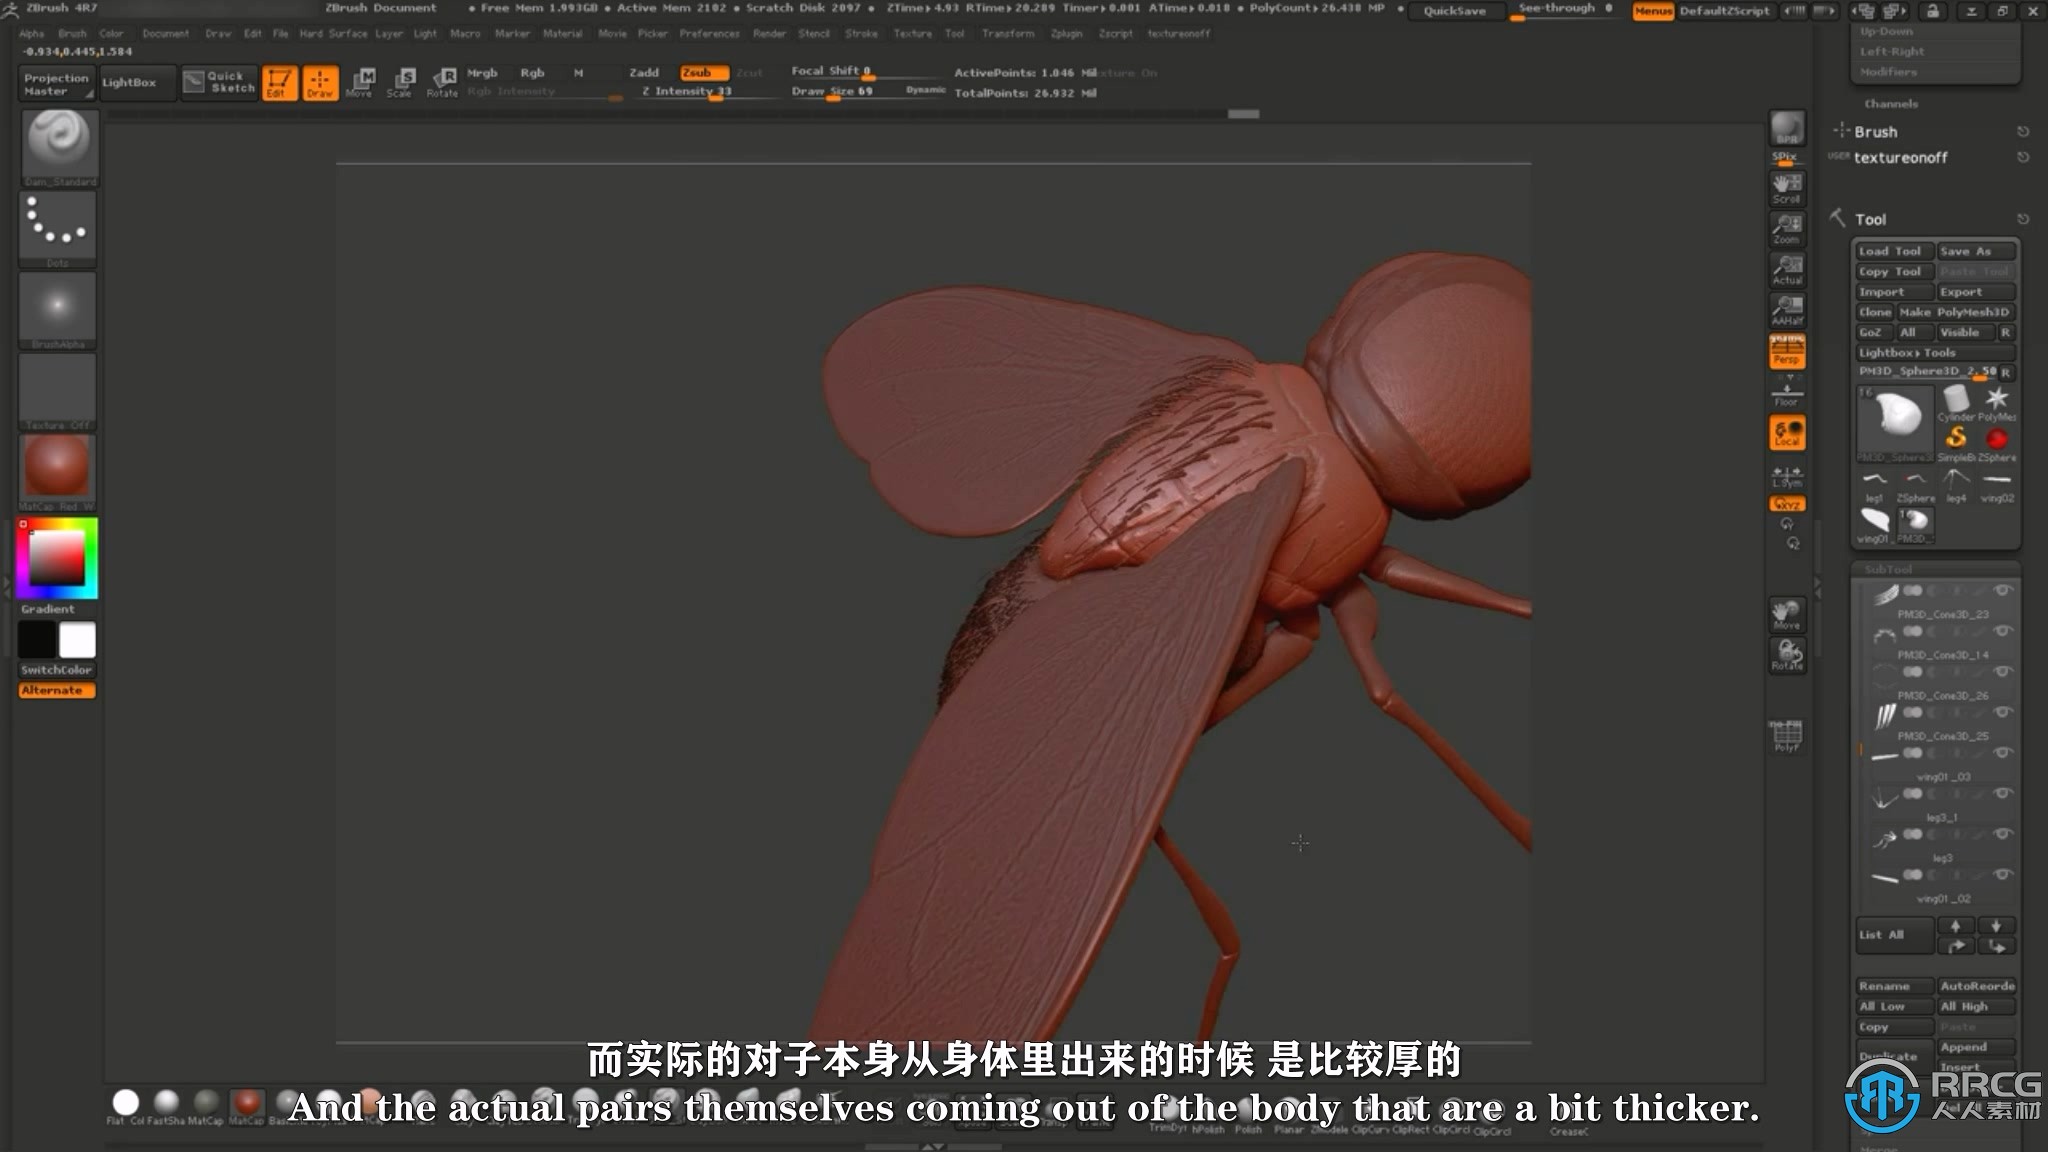 【中文字幕】Zbrush逼真苍蝇雕刻建模实例制作视频教程